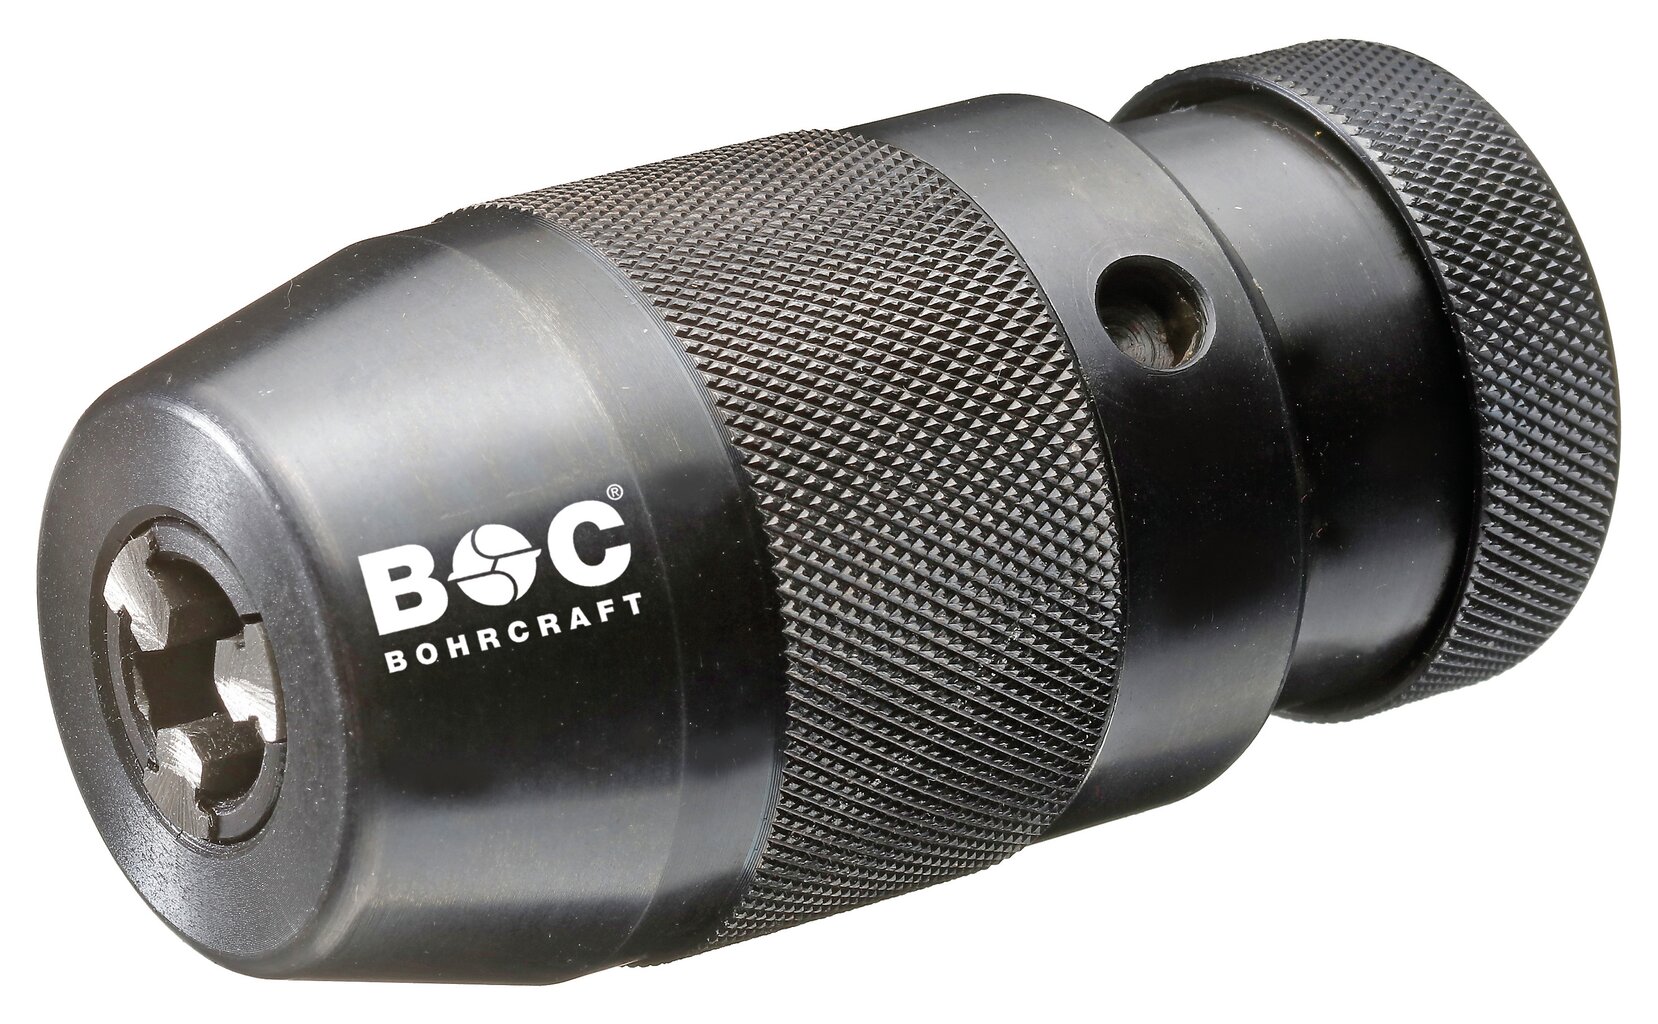 Savaime prisiveržiantis griebtuvas Bohrcraft PRO 1,0 - 13,0 mm su priedu B16 цена и информация | Mechaniniai įrankiai | pigu.lt